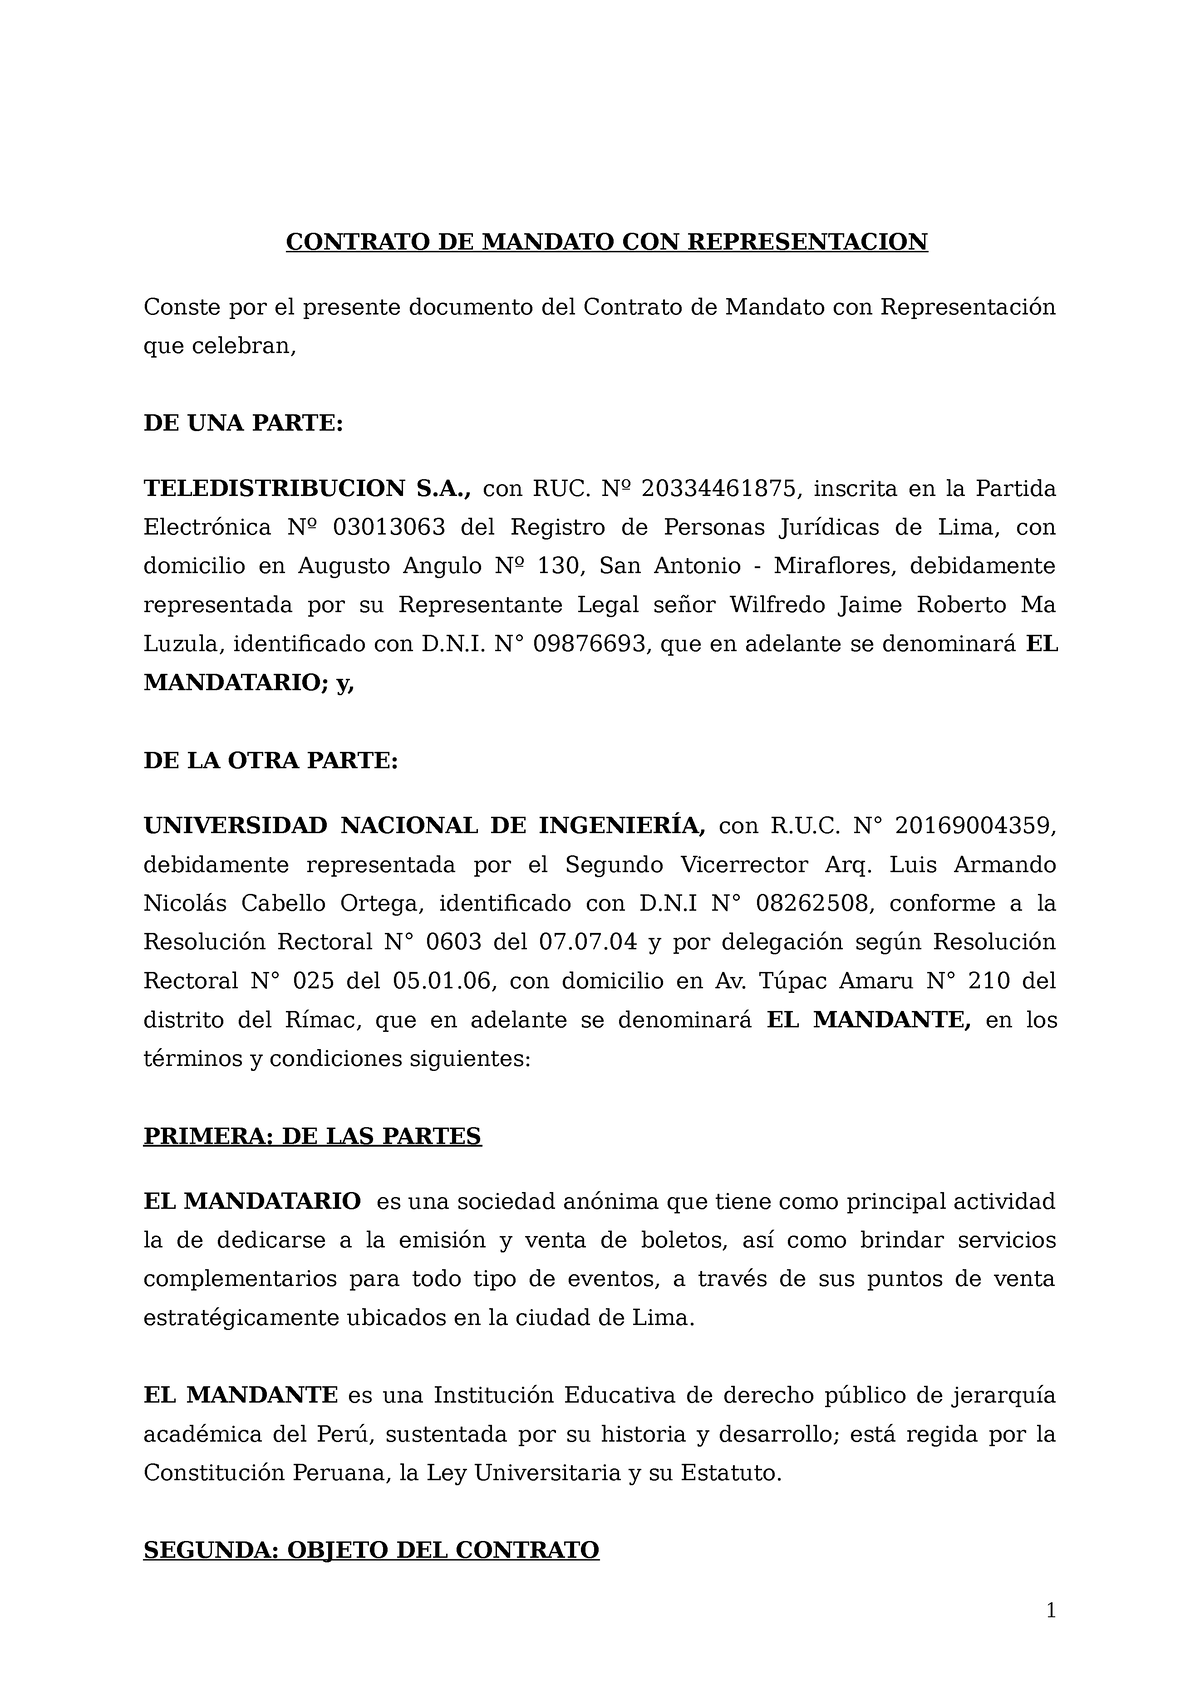 Contrato De Mandato Contrato U Orden De Contrato De Mandato Con Representacion Conste Por El 9171